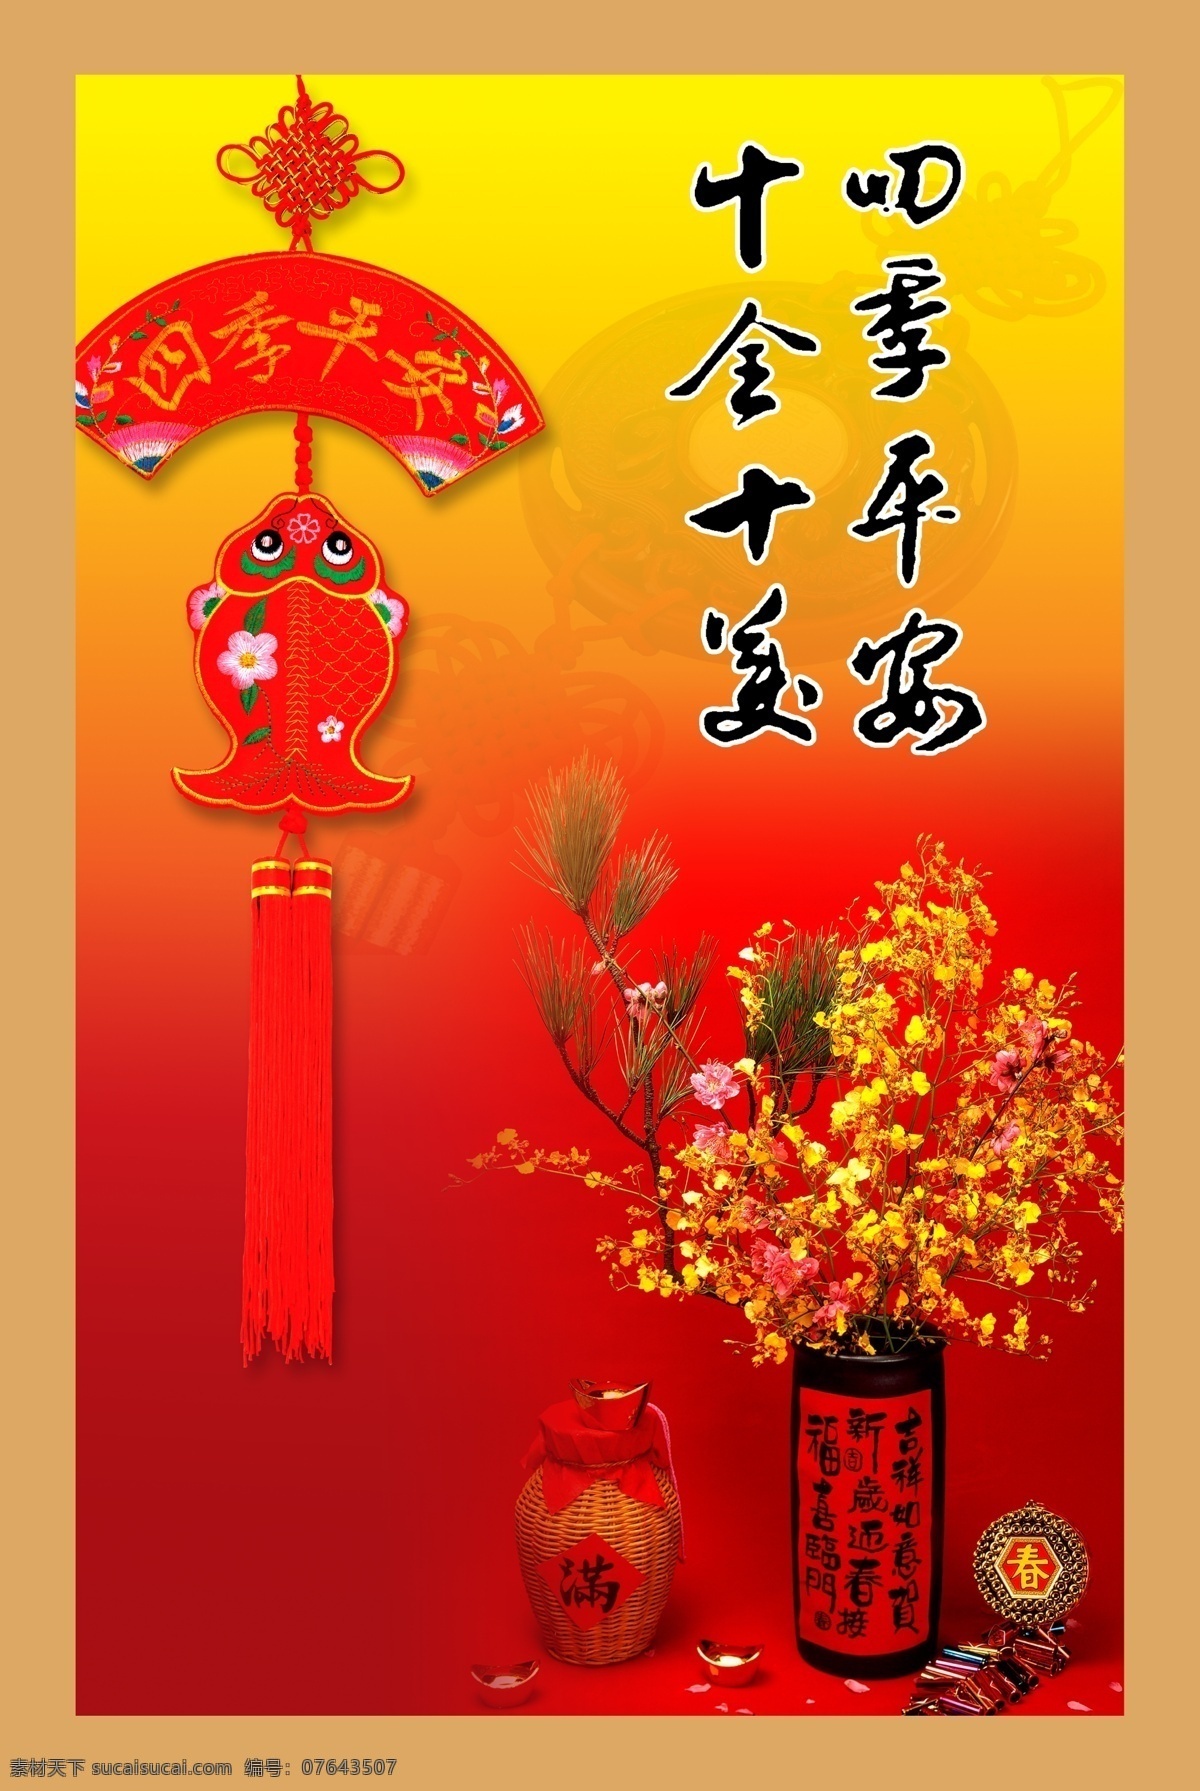 四季平安 中国结 传统元素 双鱼 酒 中国红 展板模板